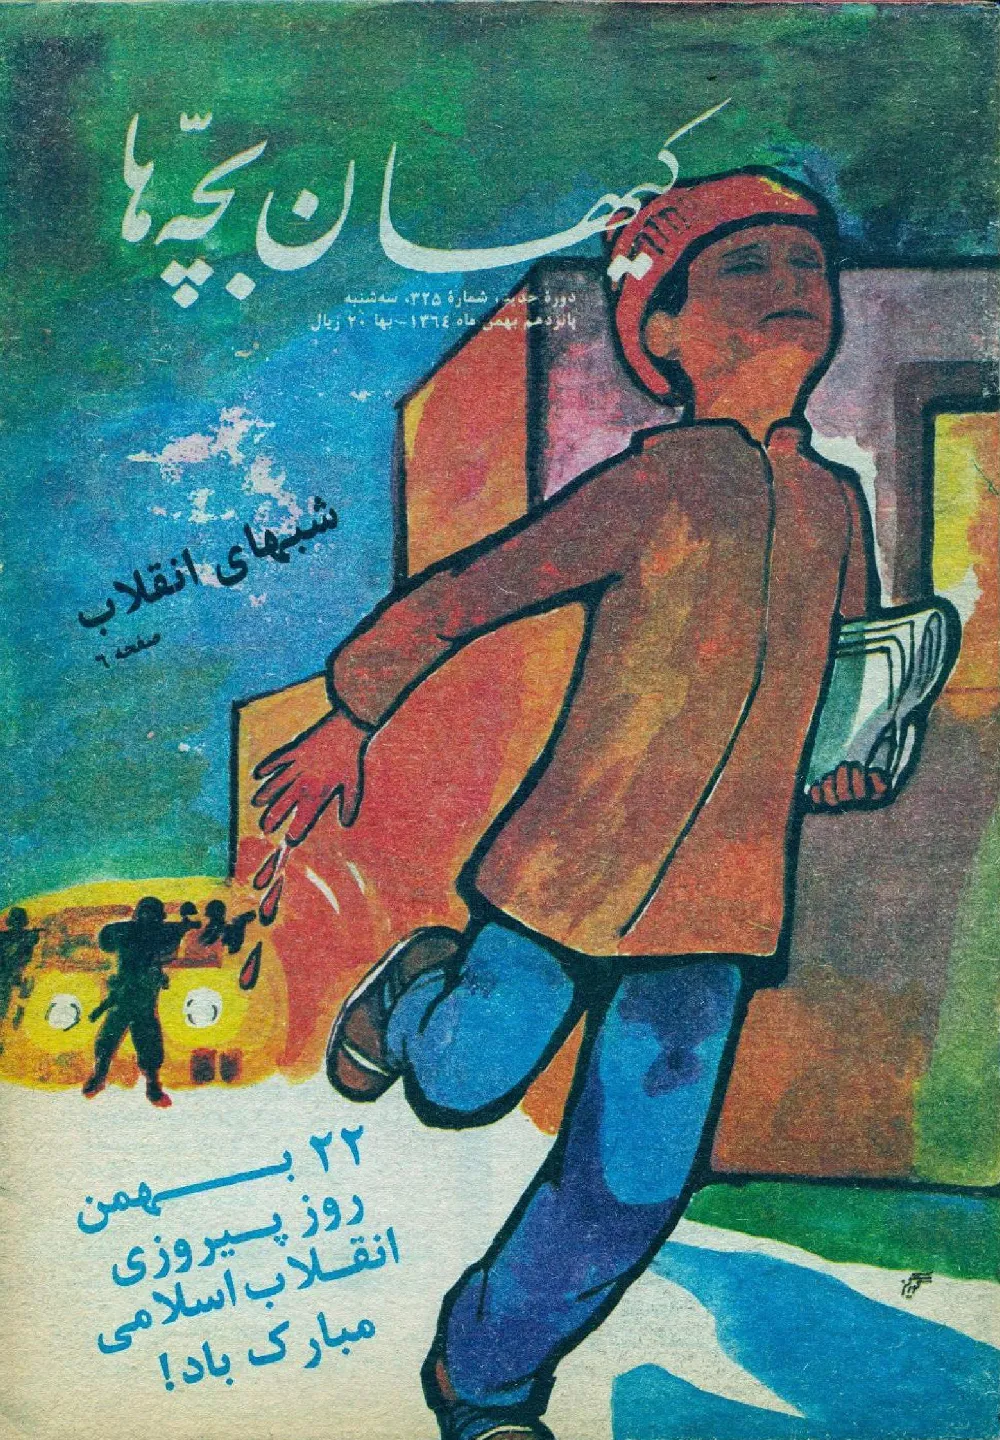 کیهان بچه ها - دوره جدید برای بچه های انقلاب - شماره ۳۲۵ - بهمن ۱۳۶۴